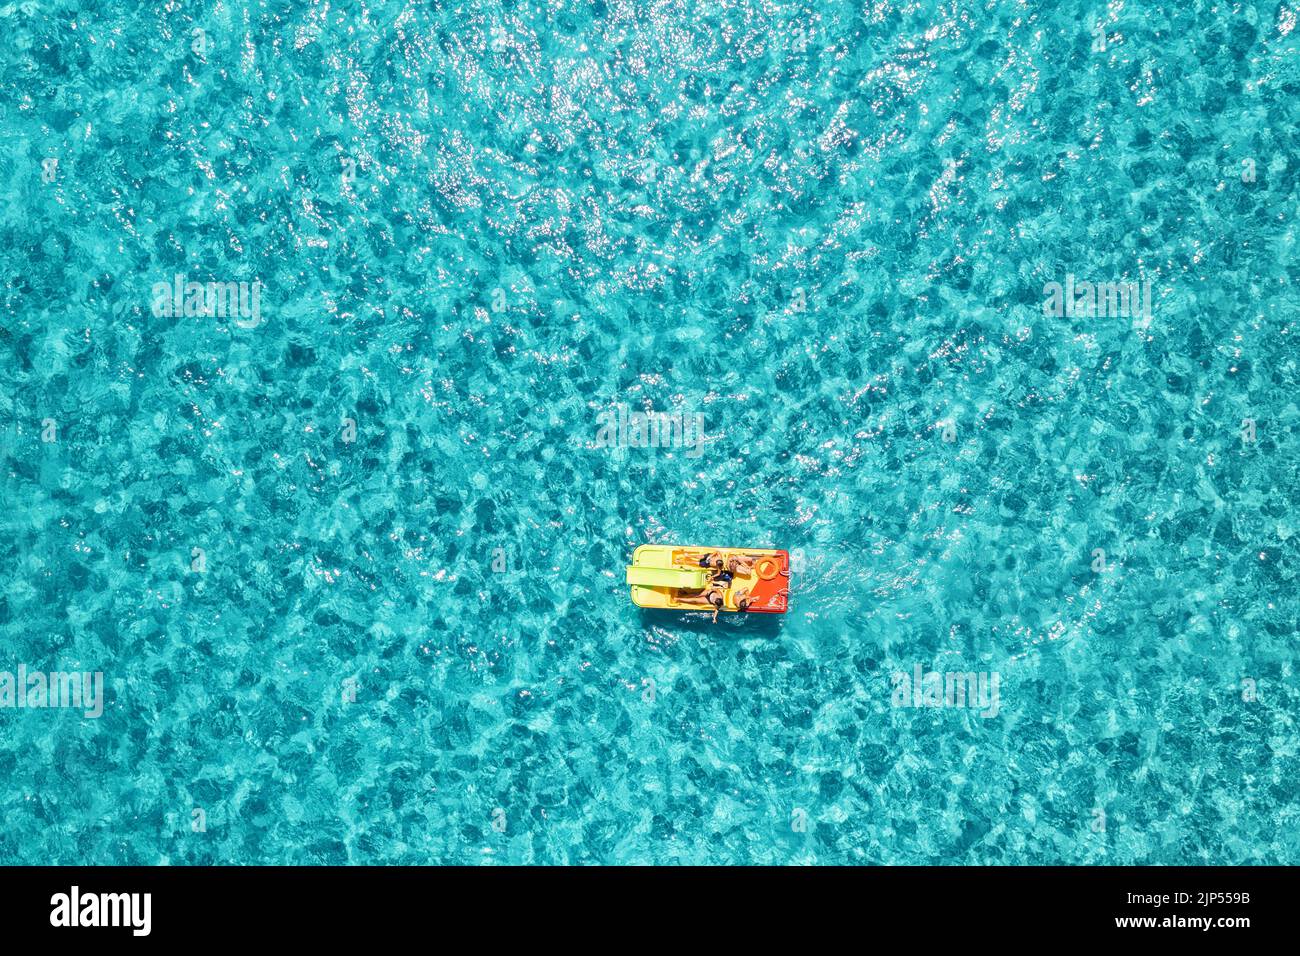 Entspannende Menschen auf dem bunten Boot im blauen Meer an sonnigen hellen Tag. Urlaub Sardinien, Italien im Sommer. Draufsicht von der Drohne des Katamarans in Transpar Stockfoto